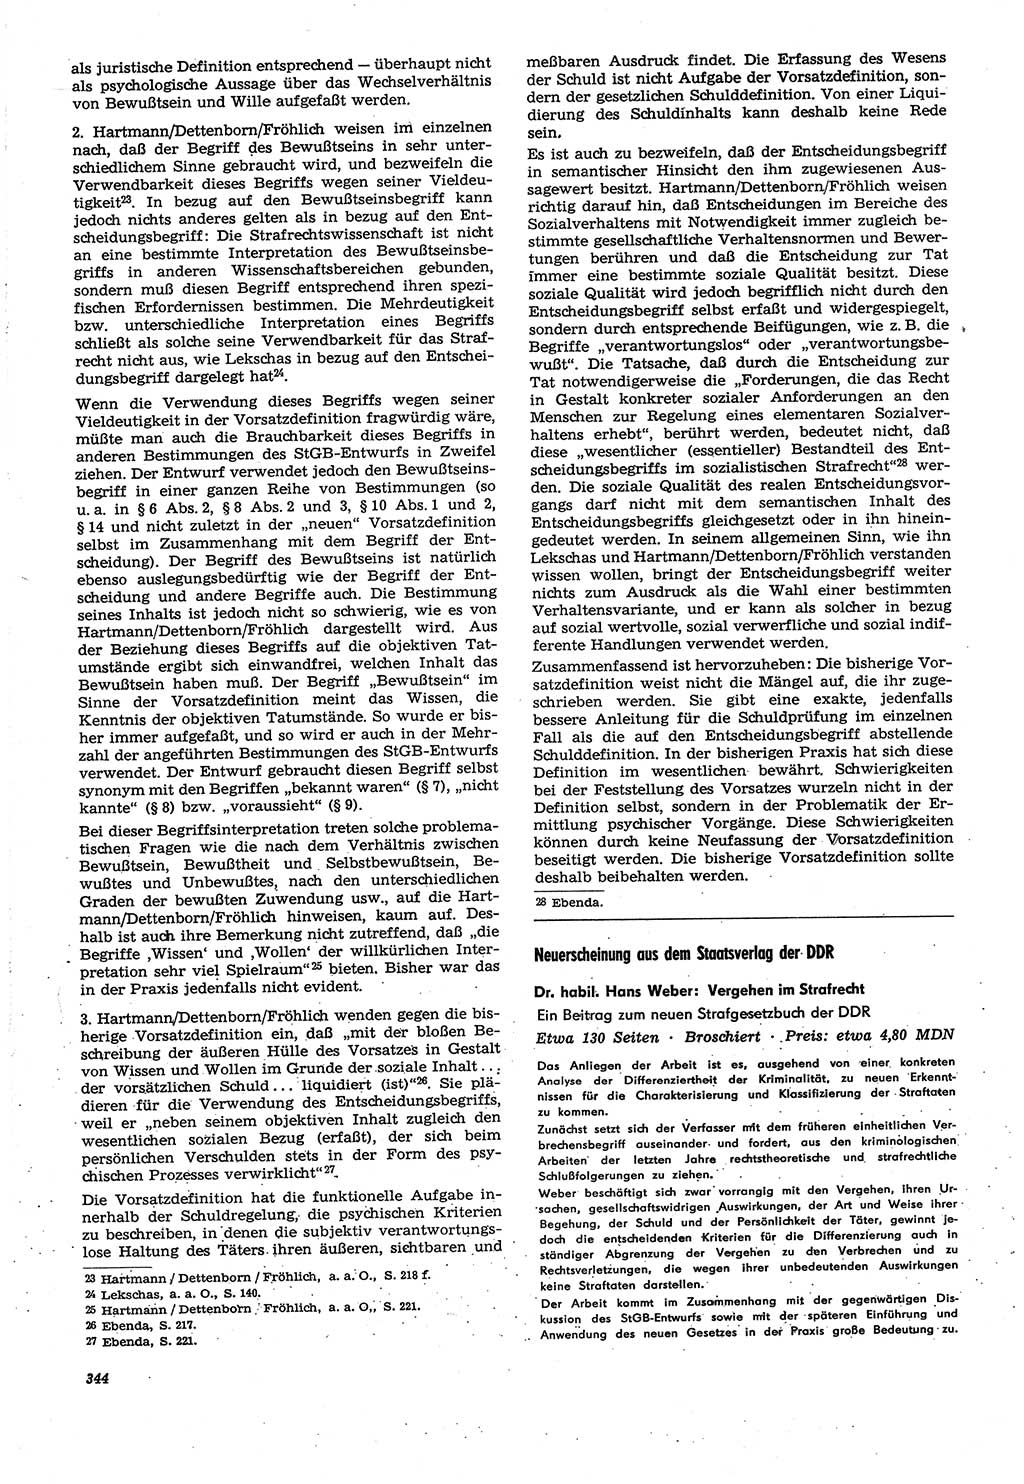 Neue Justiz (NJ), Zeitschrift für Recht und Rechtswissenschaft [Deutsche Demokratische Republik (DDR)], 21. Jahrgang 1967, Seite 344 (NJ DDR 1967, S. 344)